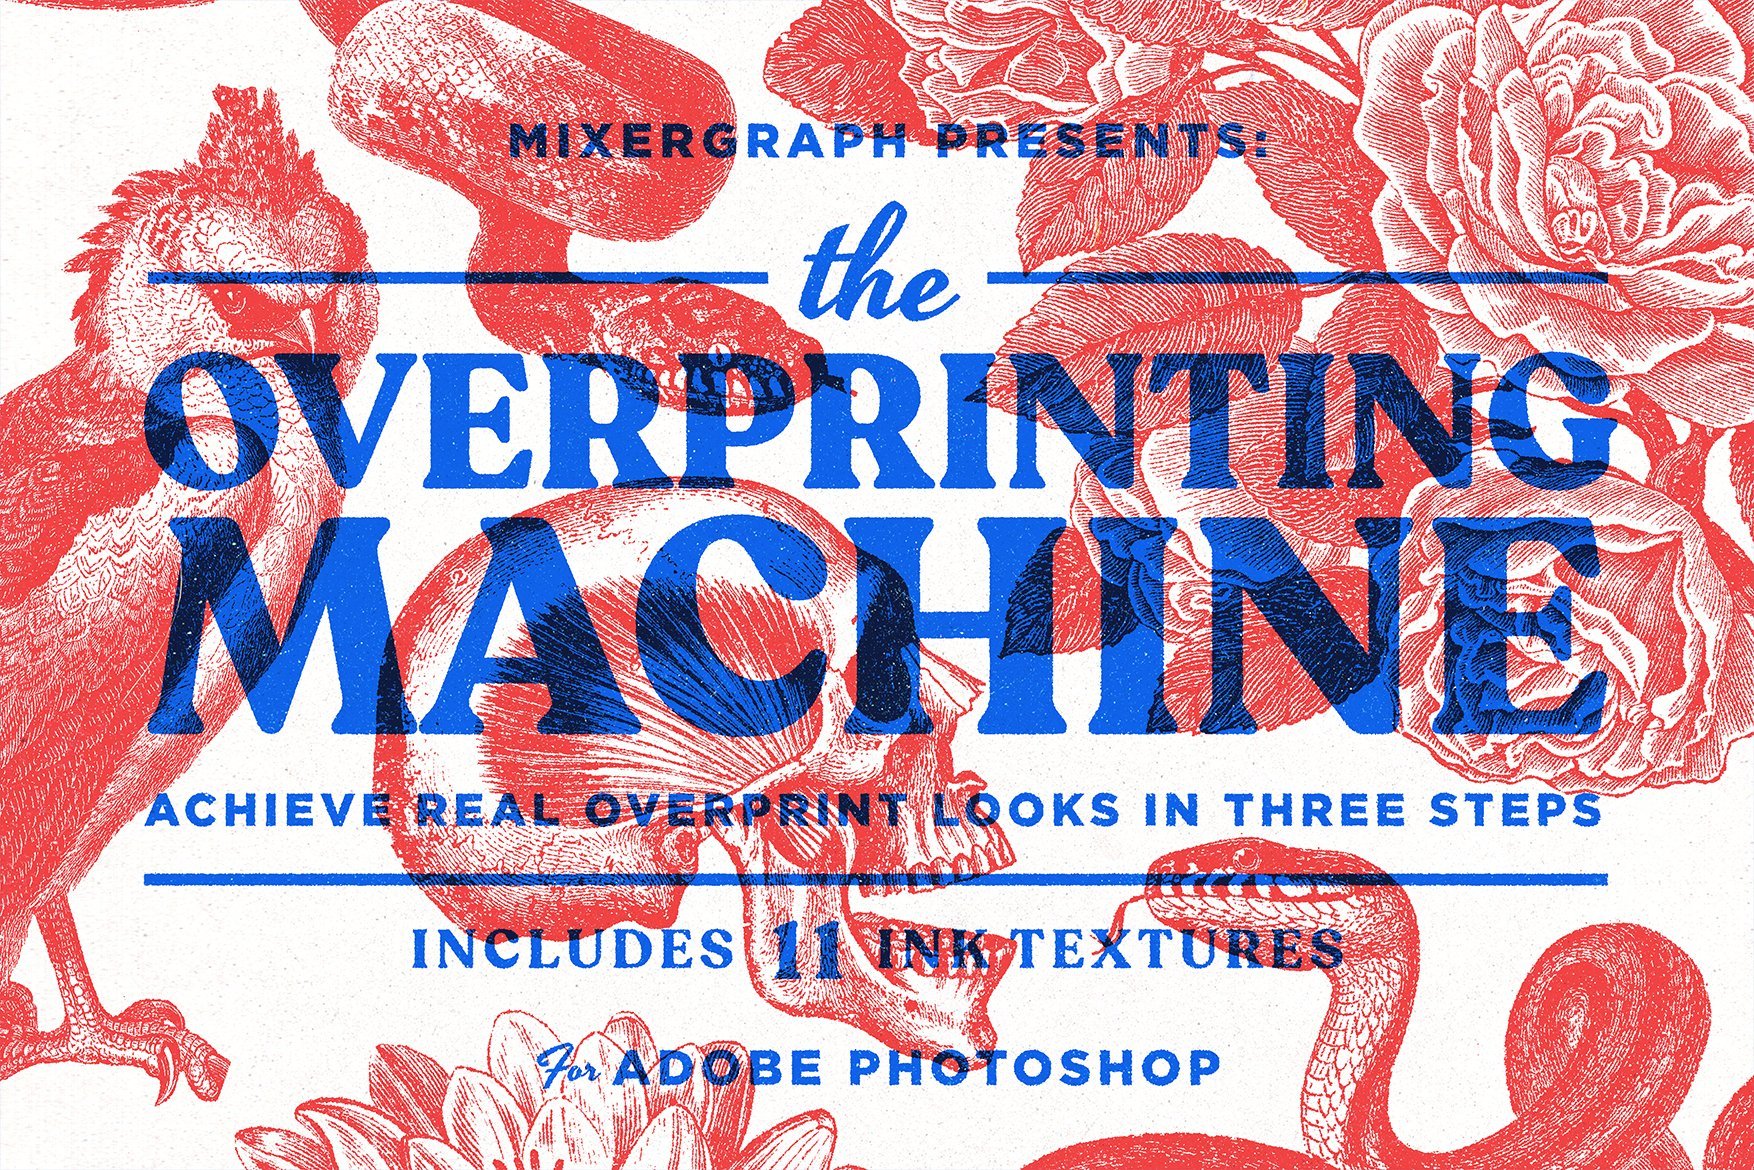 The Overprinting Machine